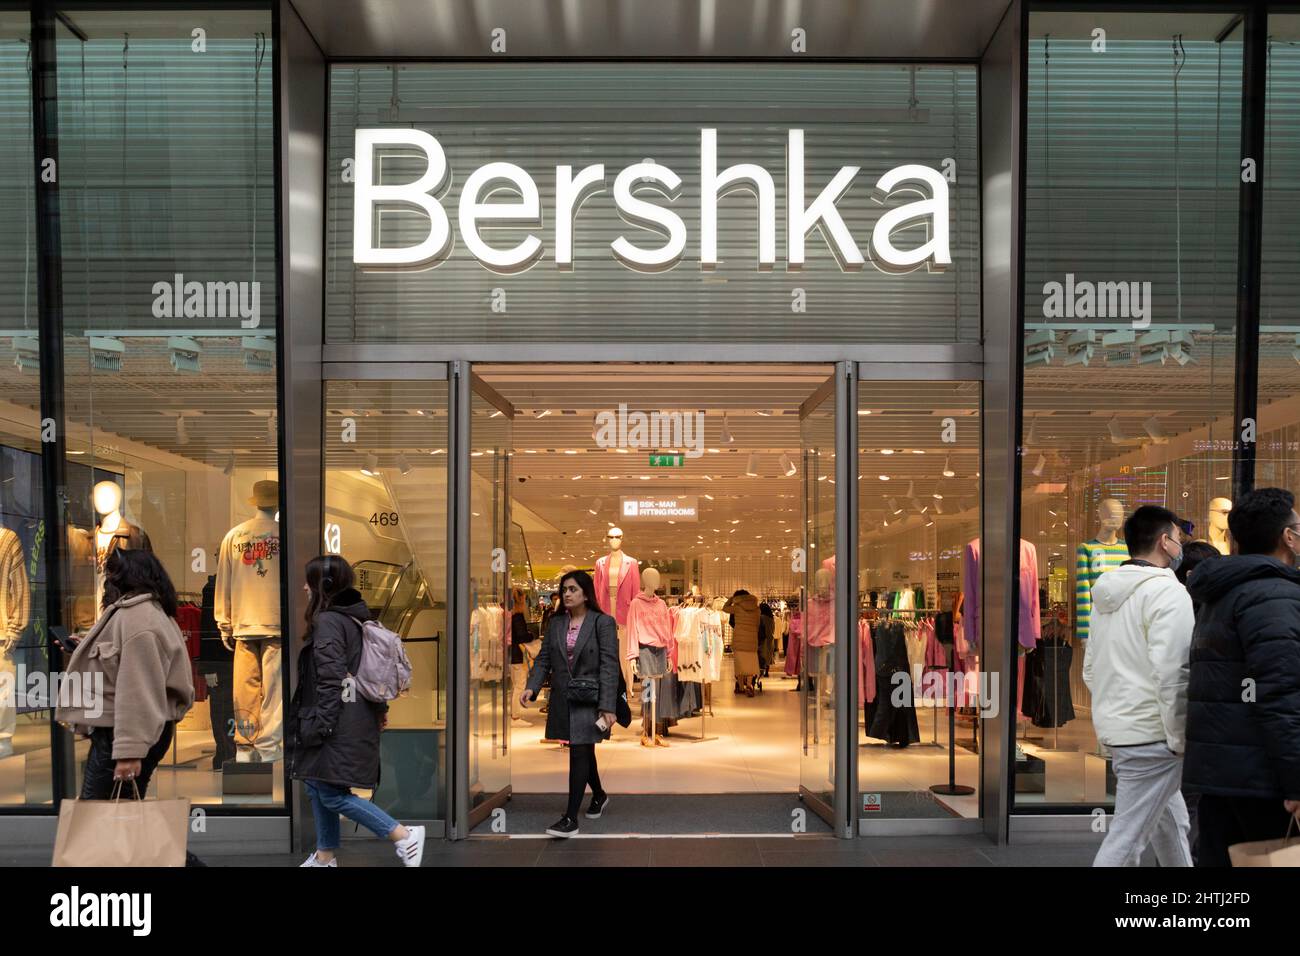 Bershka Store in der Oxford Street, West End London Stockfotografie - Alamy